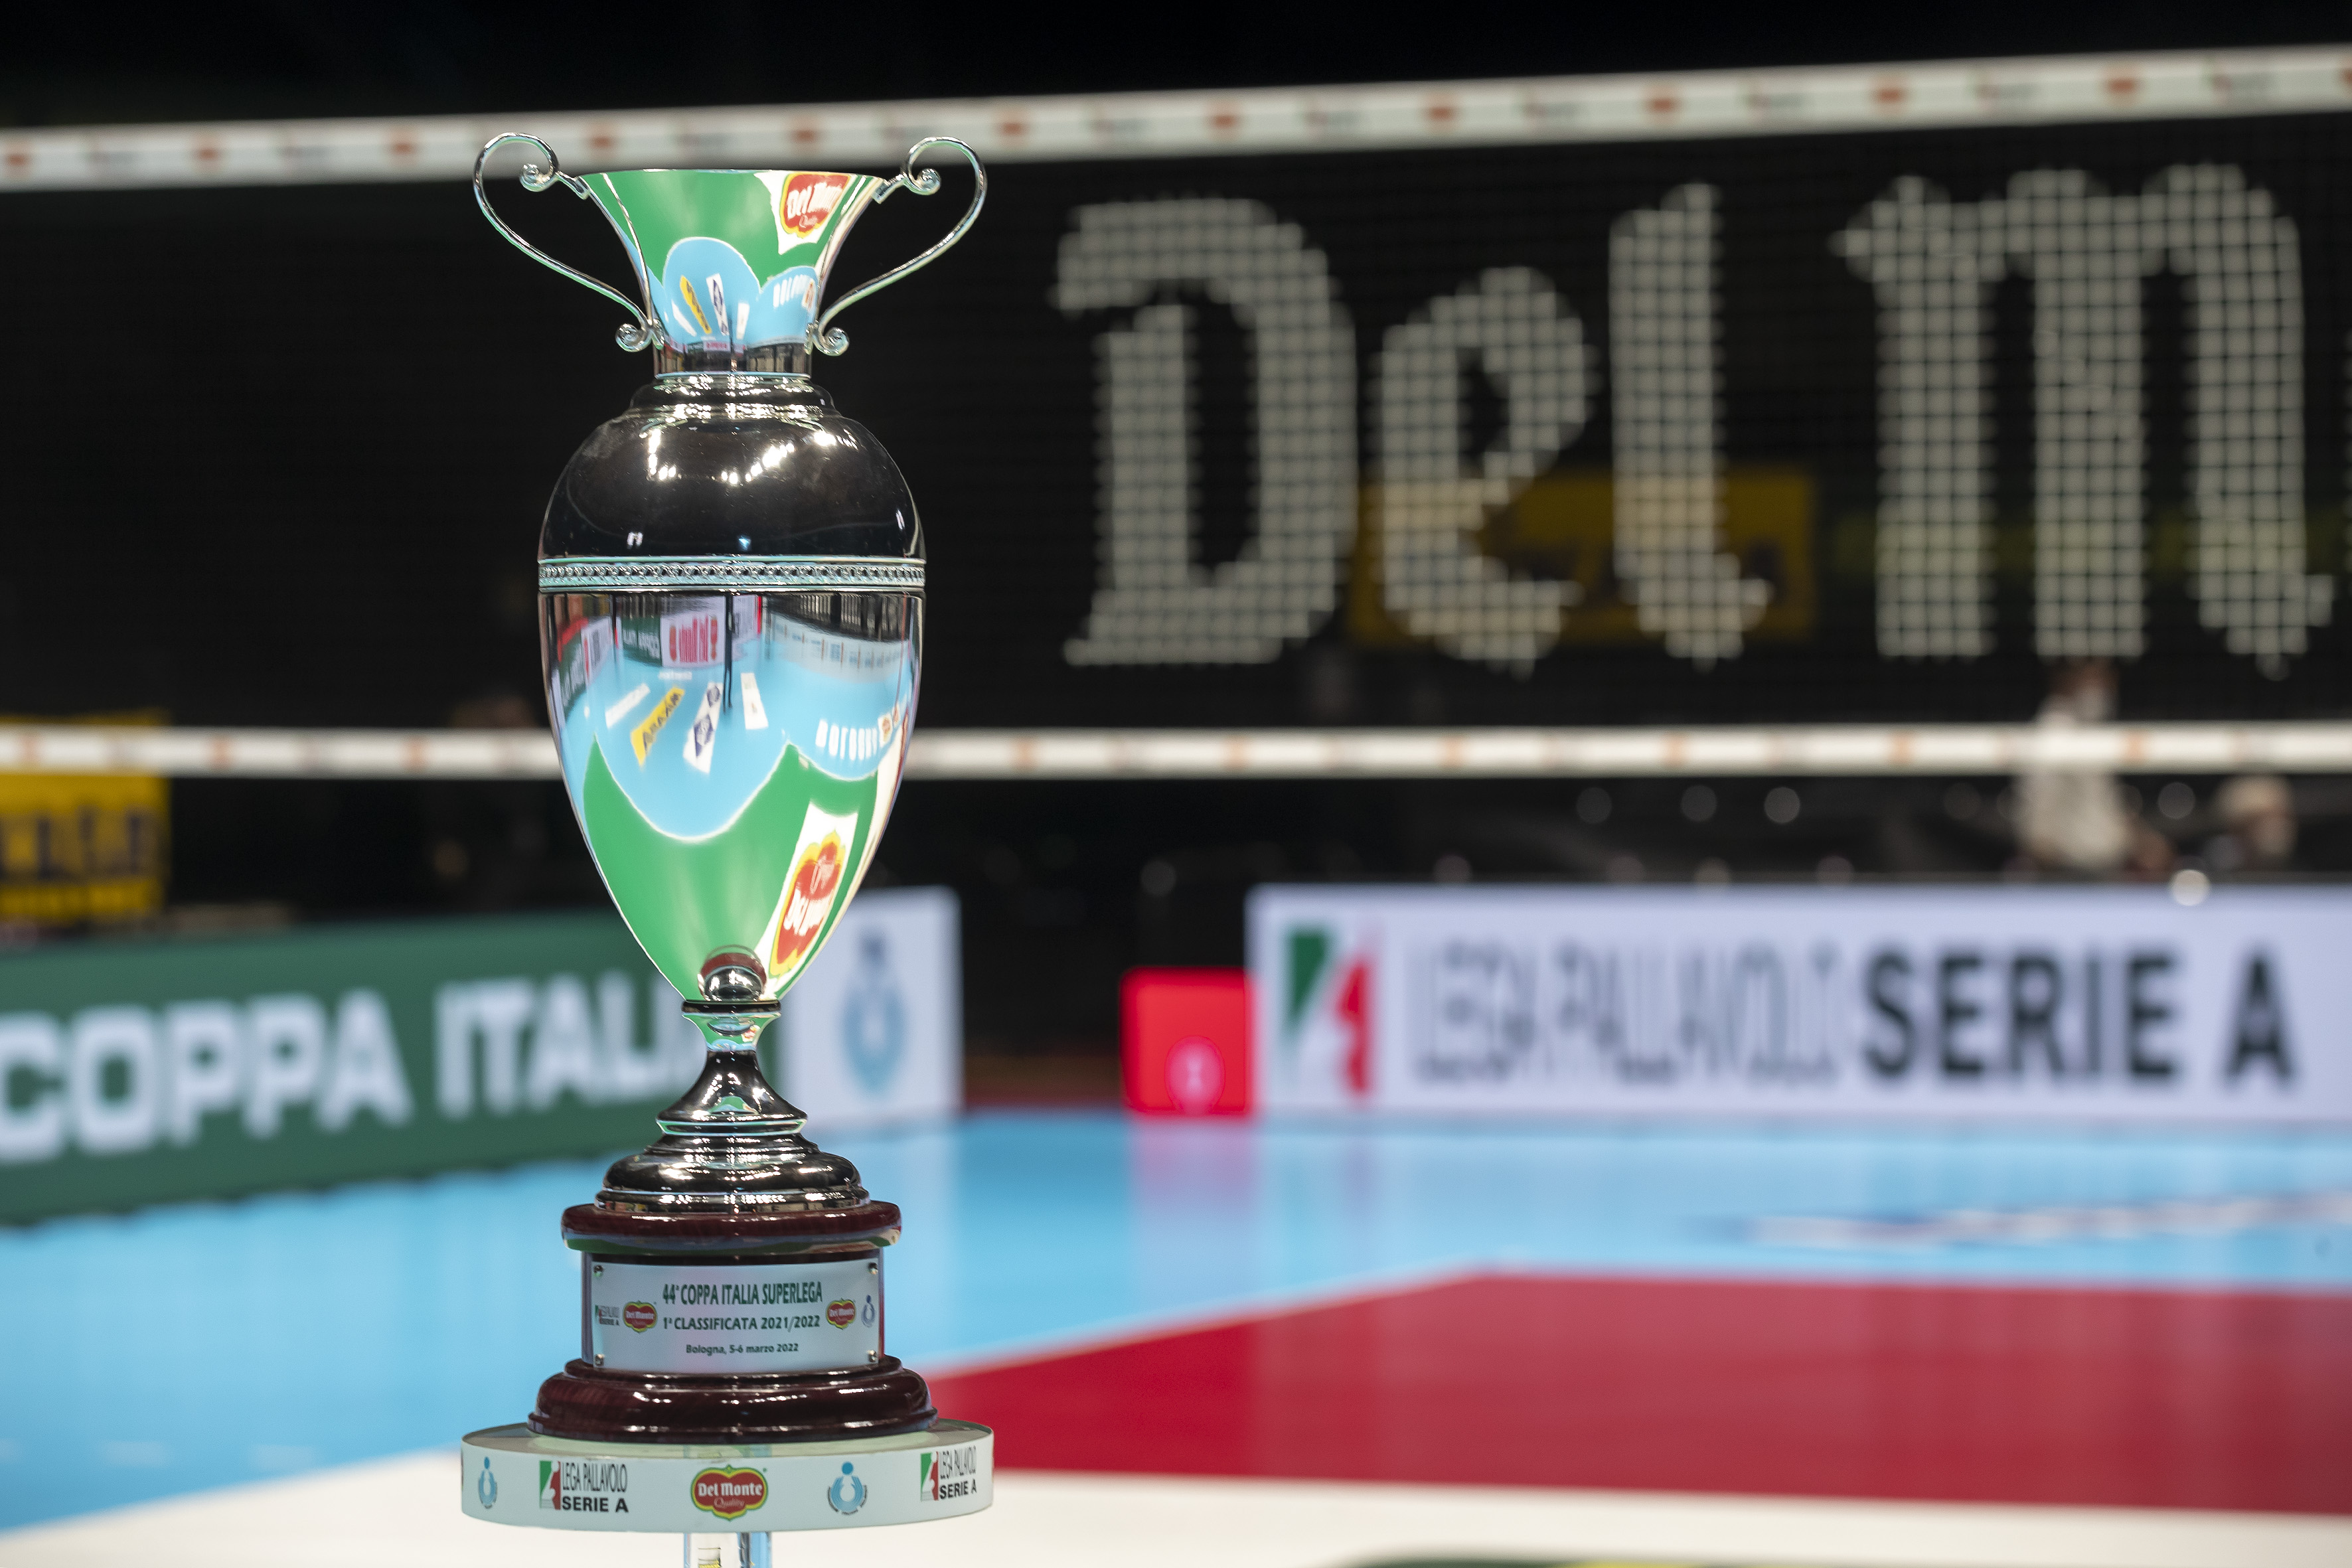 Del Monte Italian Cup tickets are available Lega Pallavolo Serie A